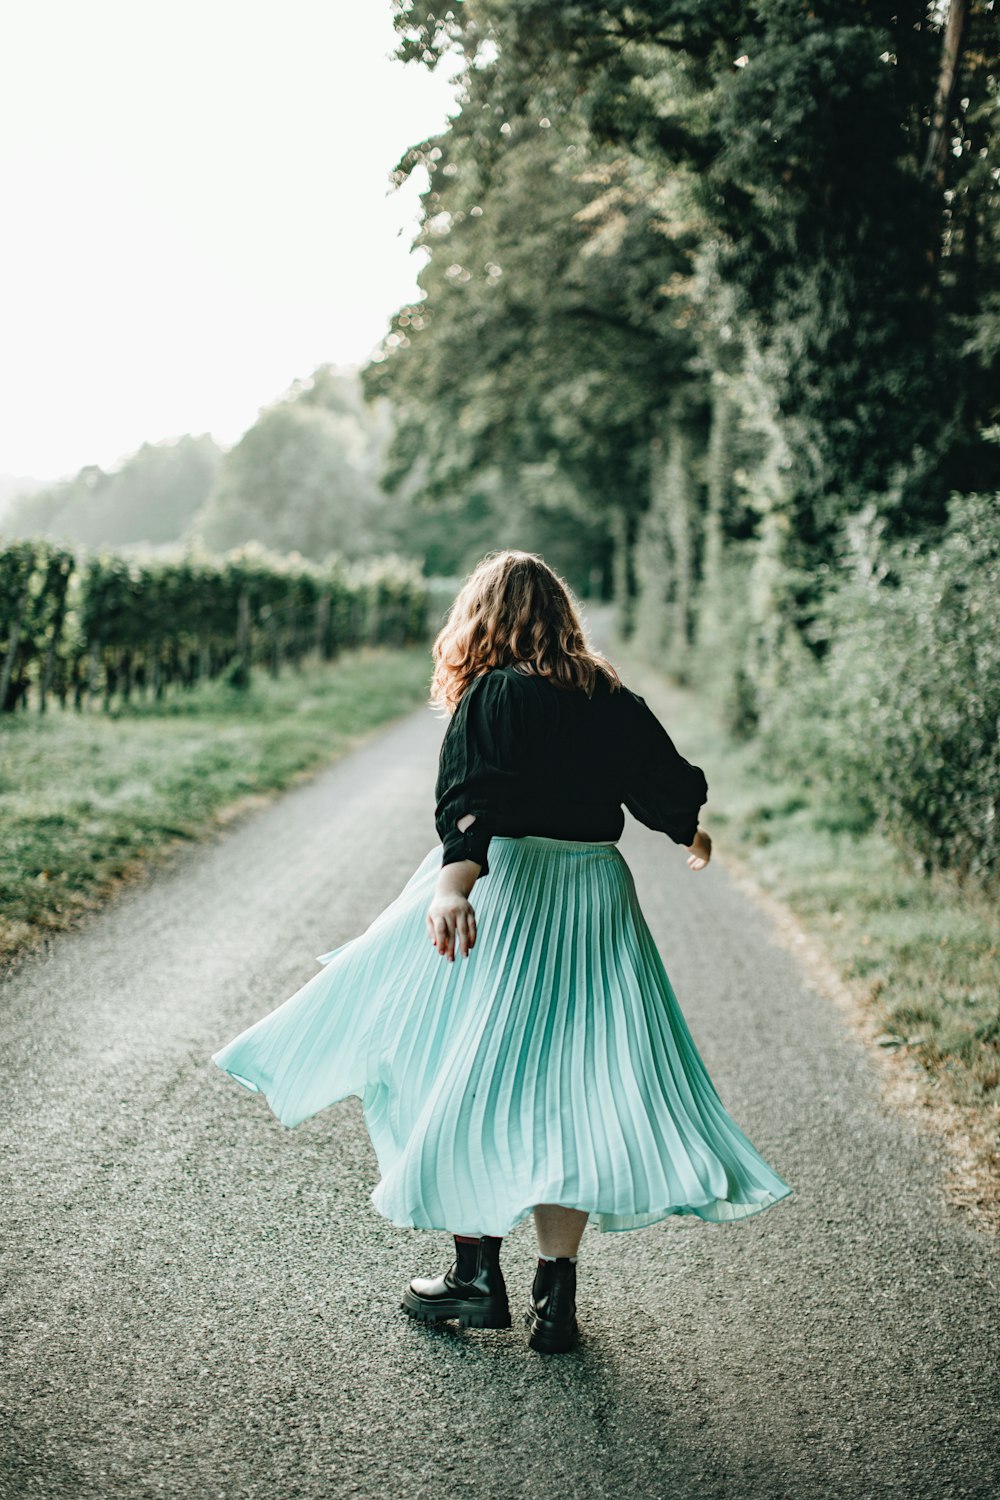 Femme en chemise noire à manches longues et jupe turquoise marchant sur un chemin de terre pendant la journée